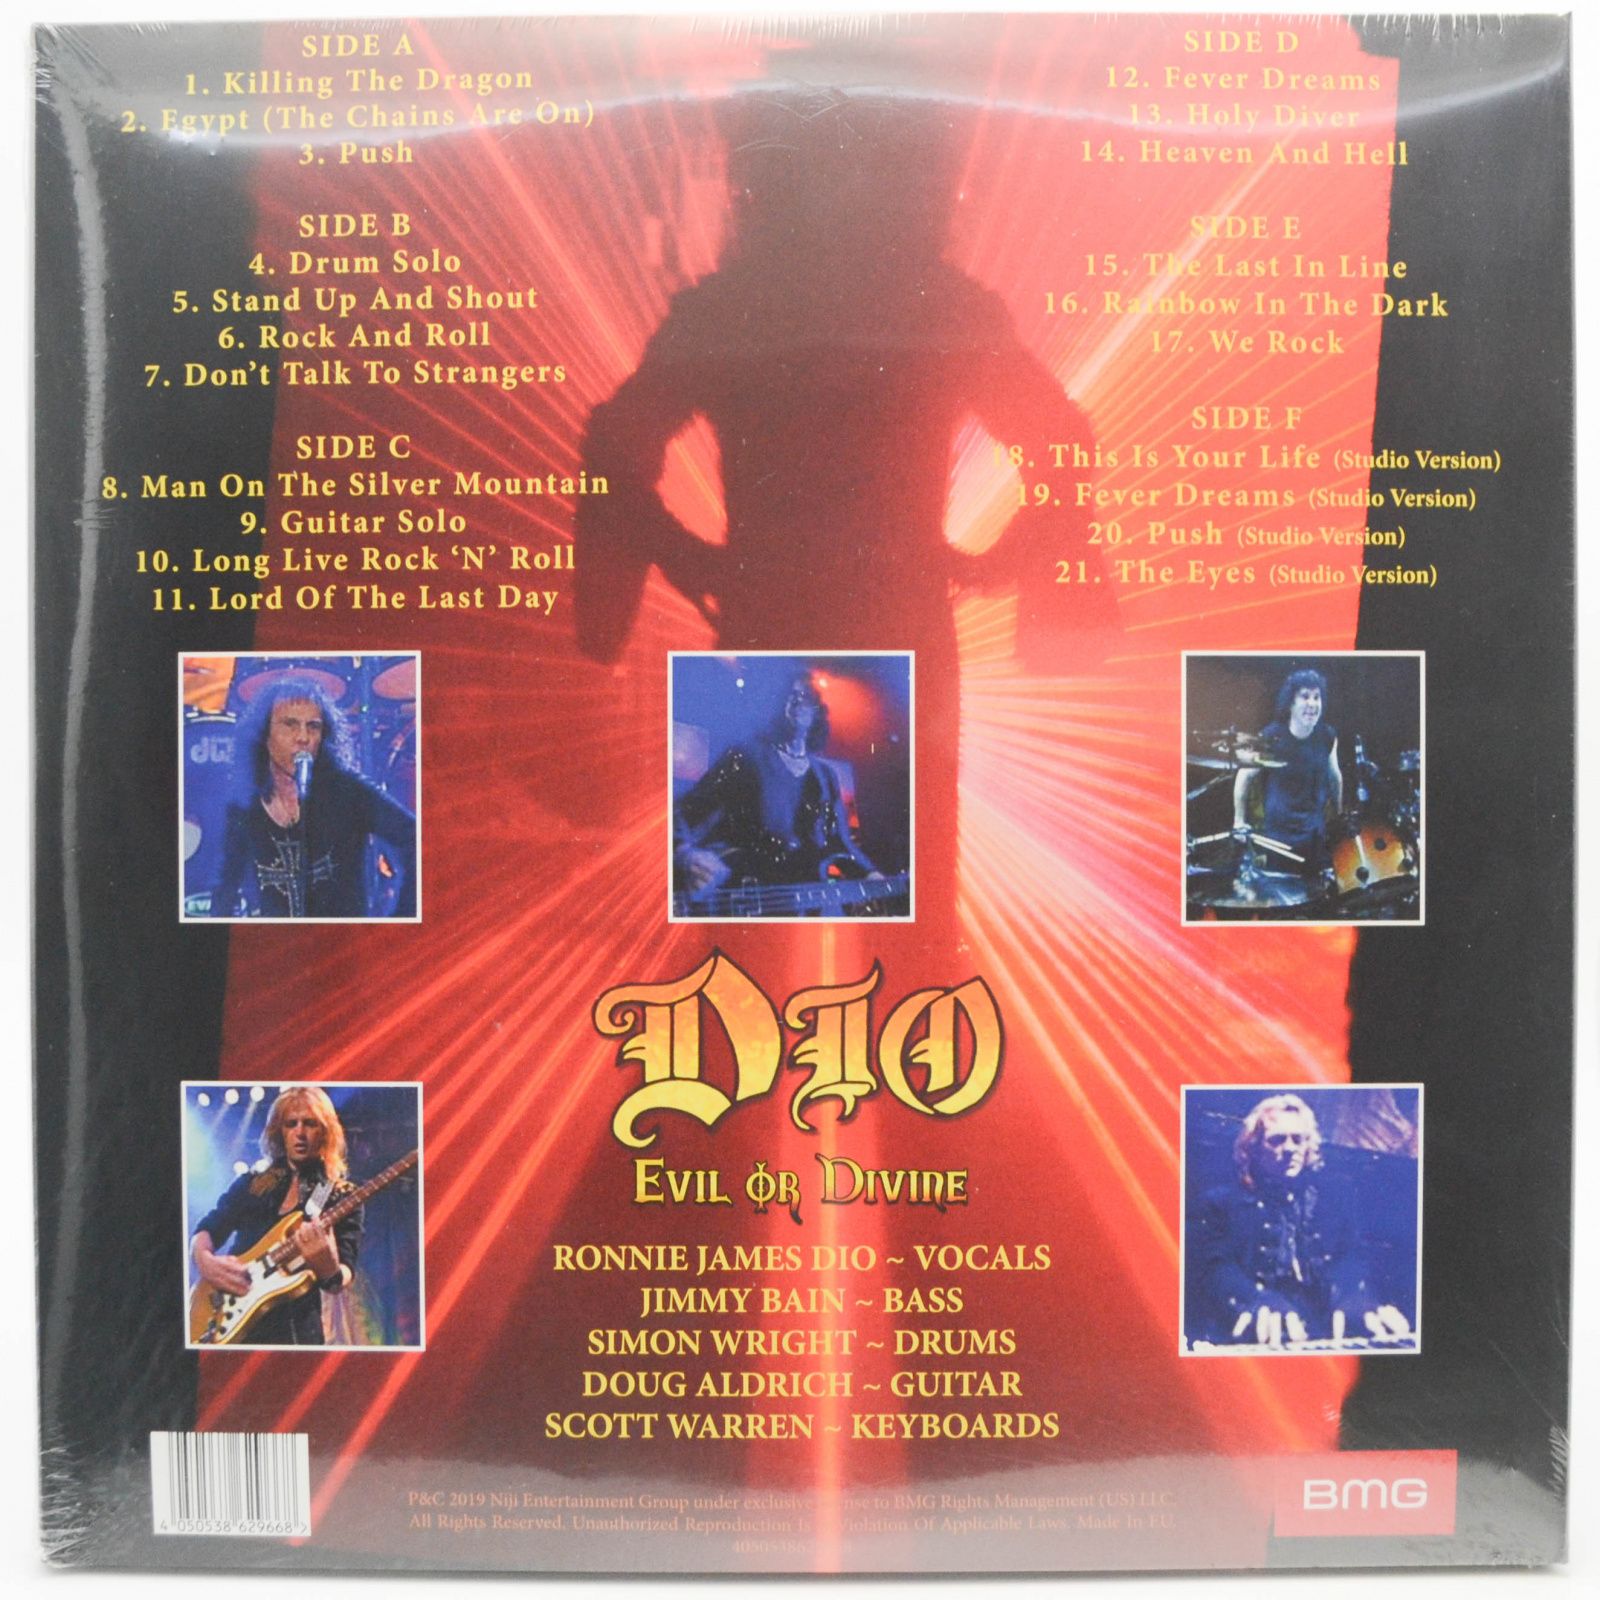 Dio — Evil Or Divine (3LP, Lenticular 3D), 2002